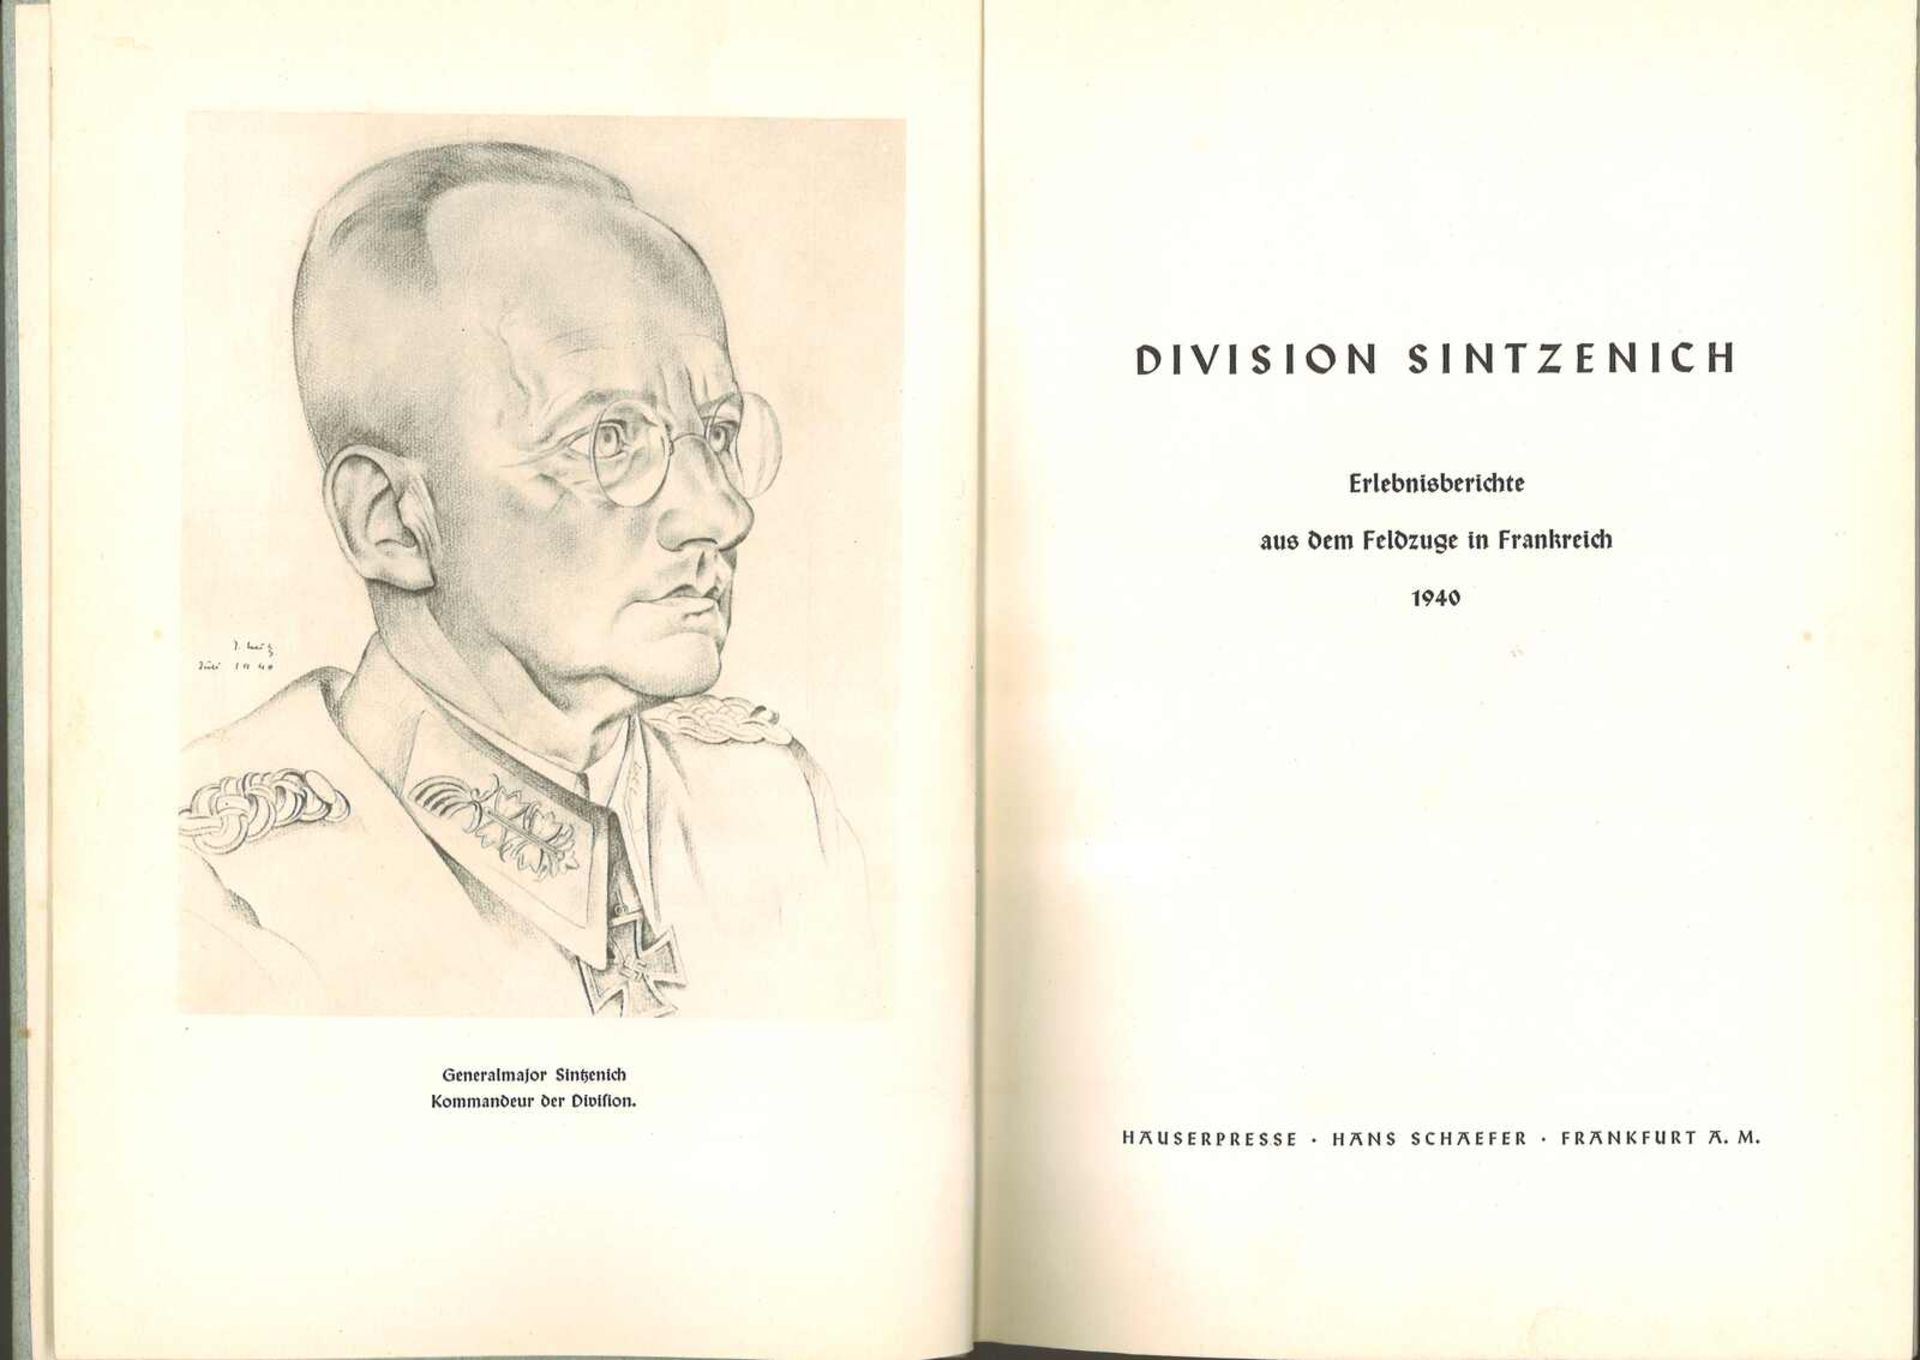 "Division Sintzenich", Erlebnisberichte aus dem Feldzug in Frankreich 1940."Division Sintzenich", r